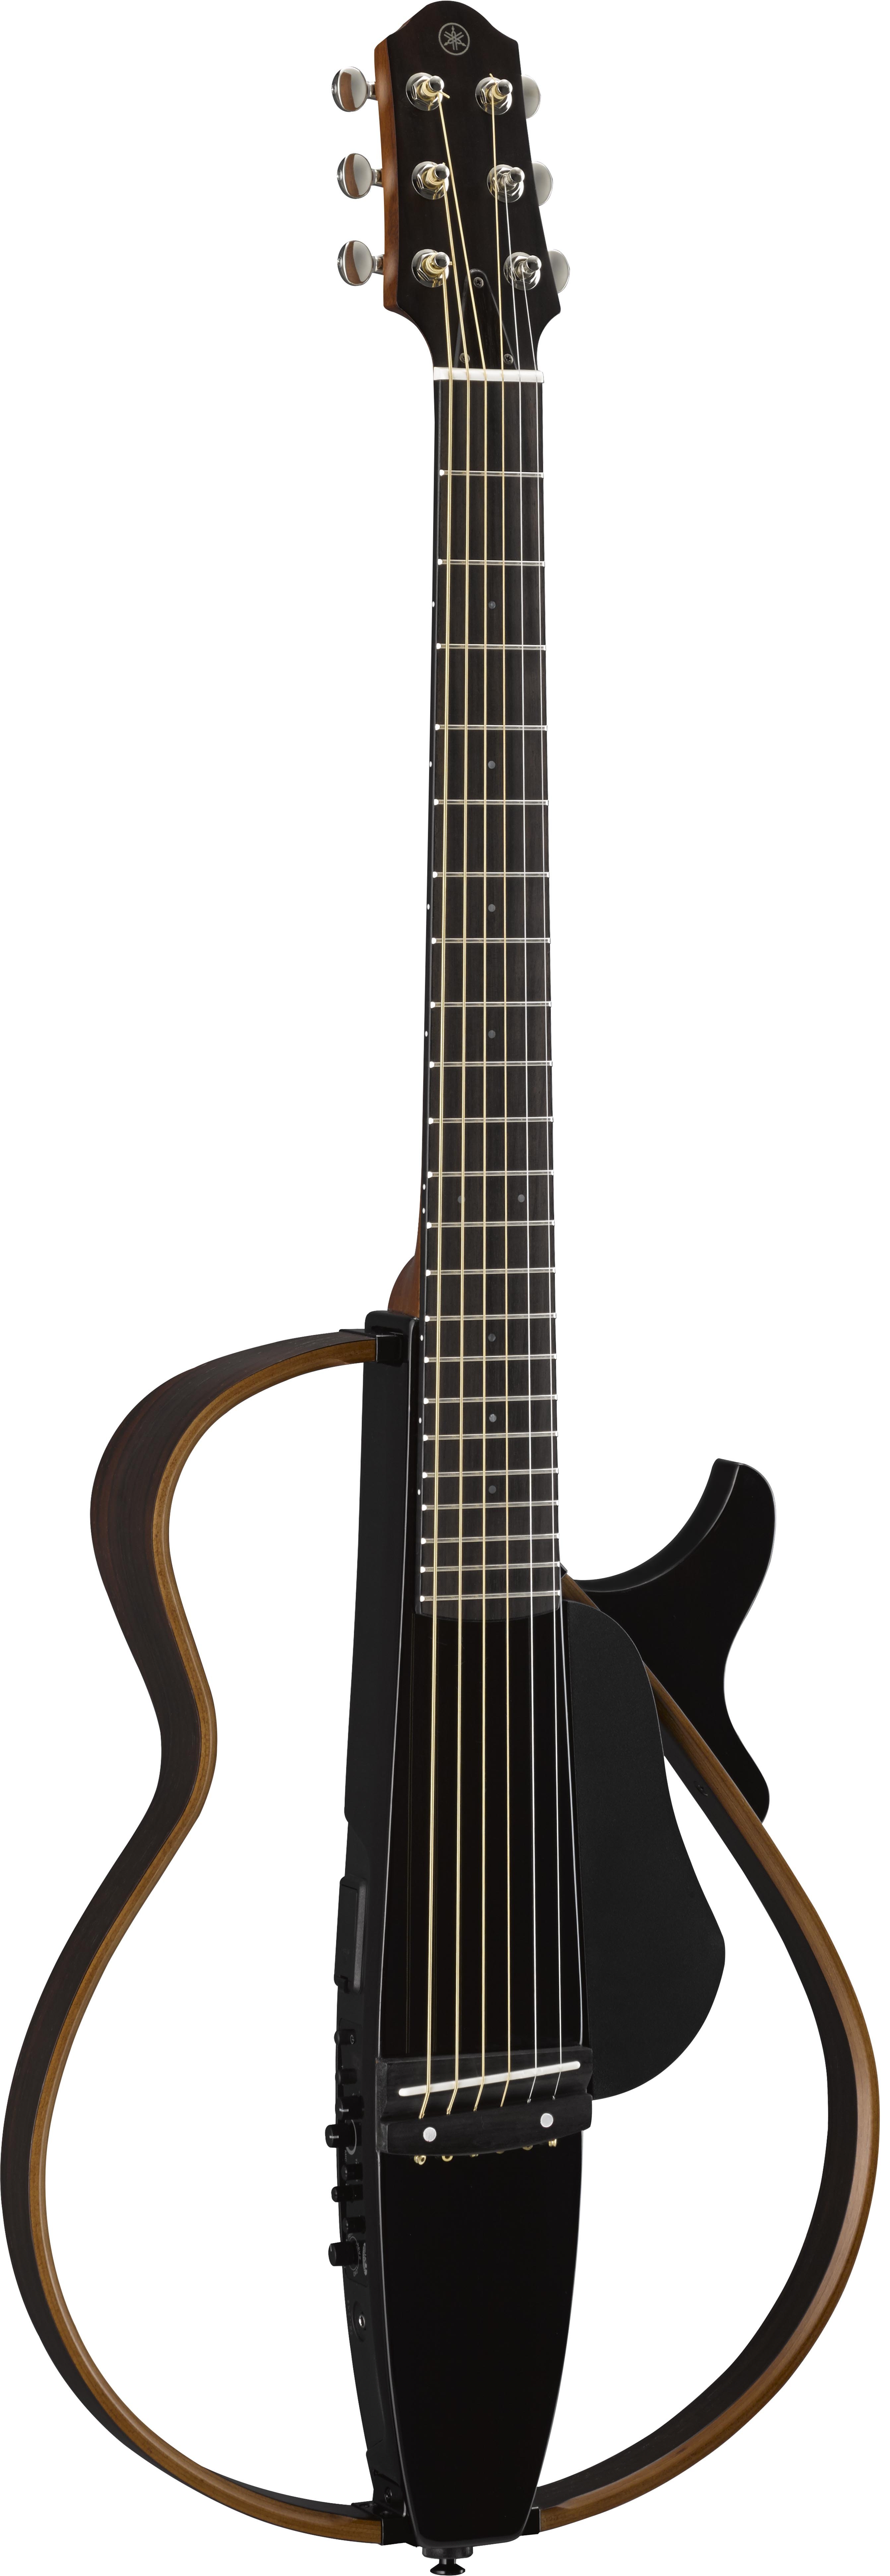 ヤマハ SLG200 Series サイレントギター™ 概要